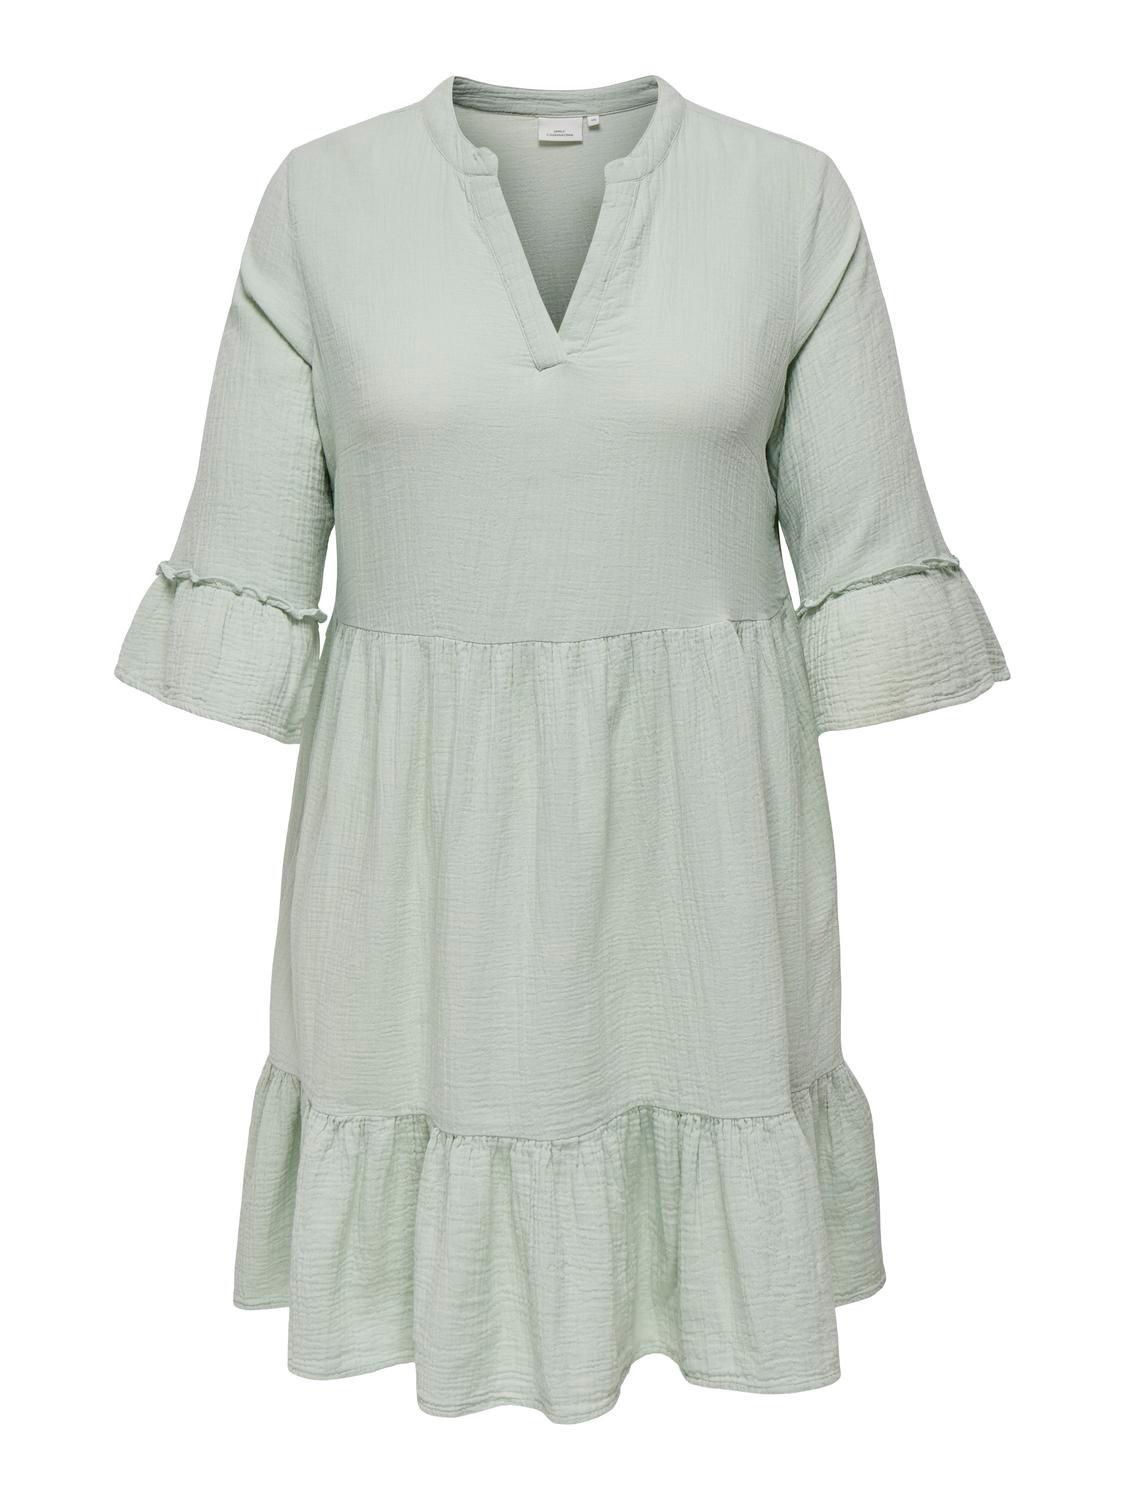 ONLY Regular Fit Split neck Curve Short dress -Subtle Green - 15316132